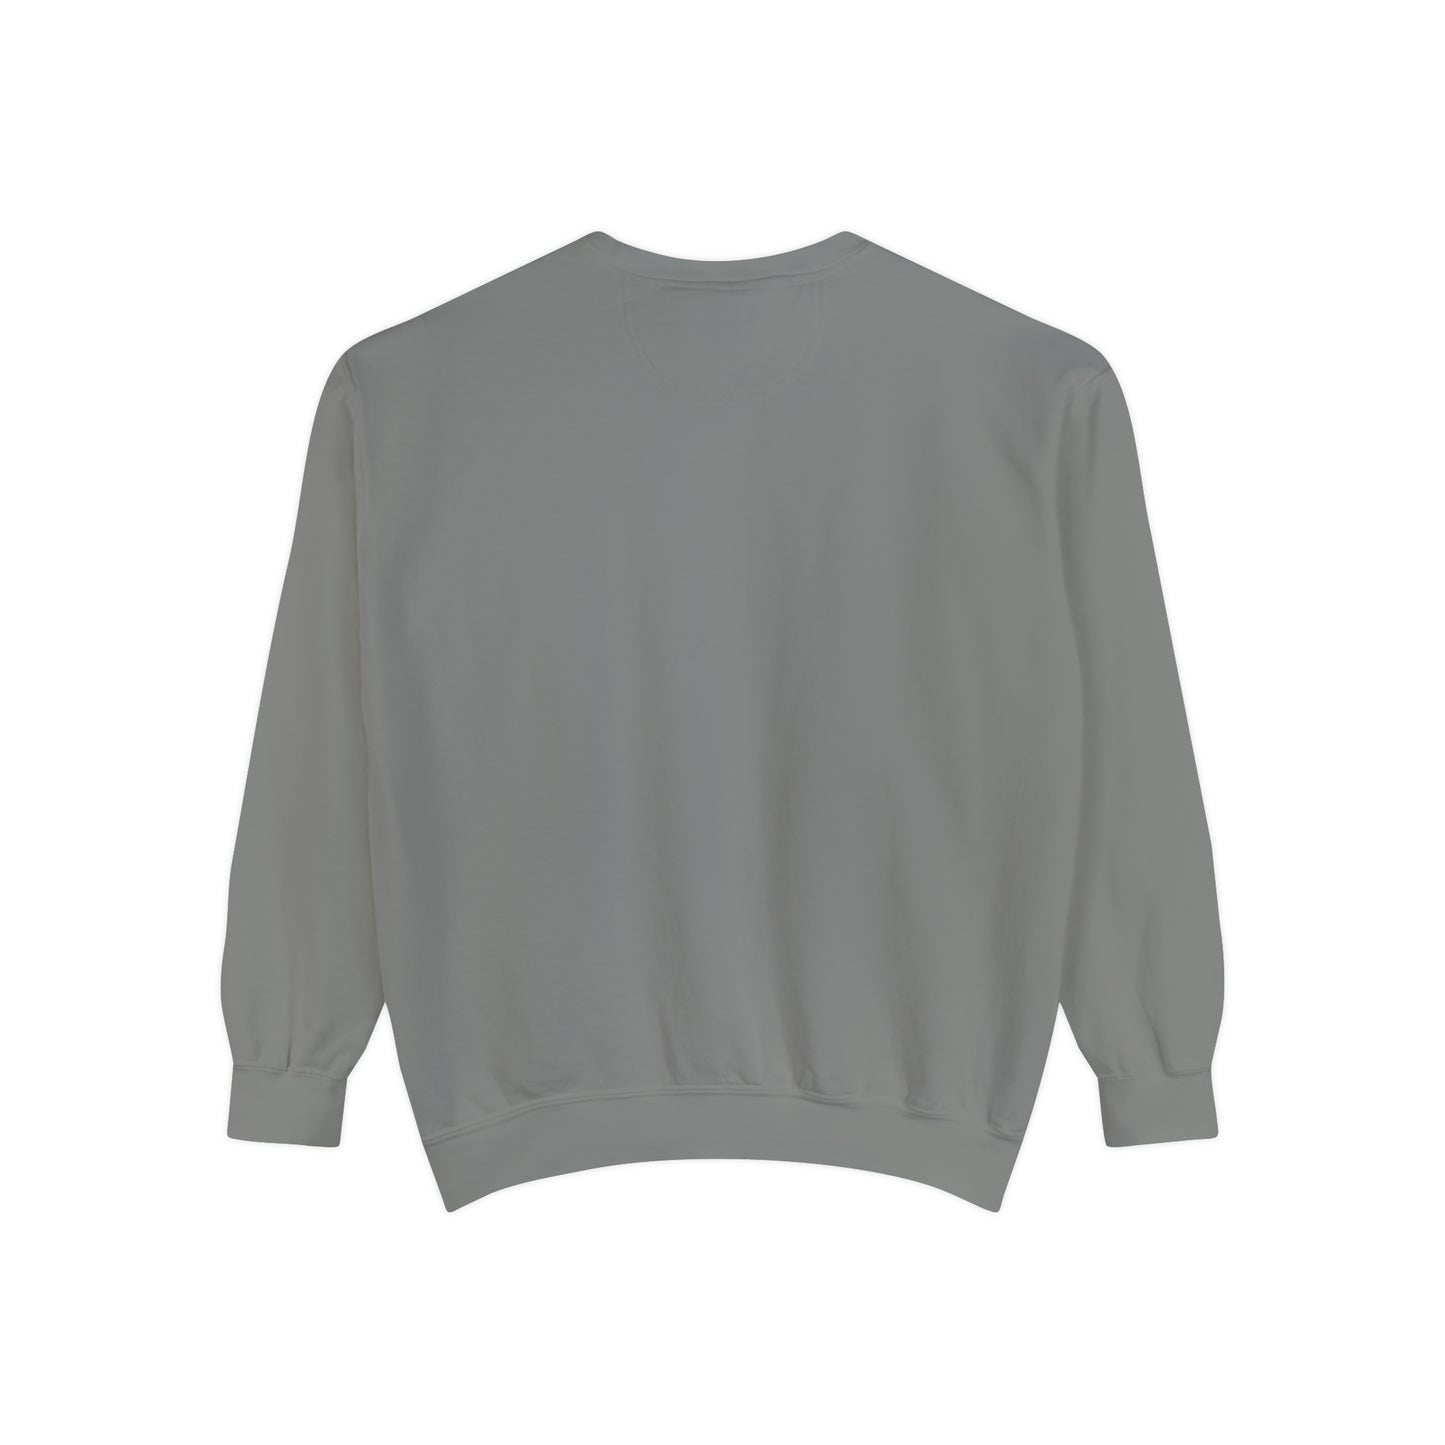 Always Cold Comfort Colors Unisex Sweatshirt